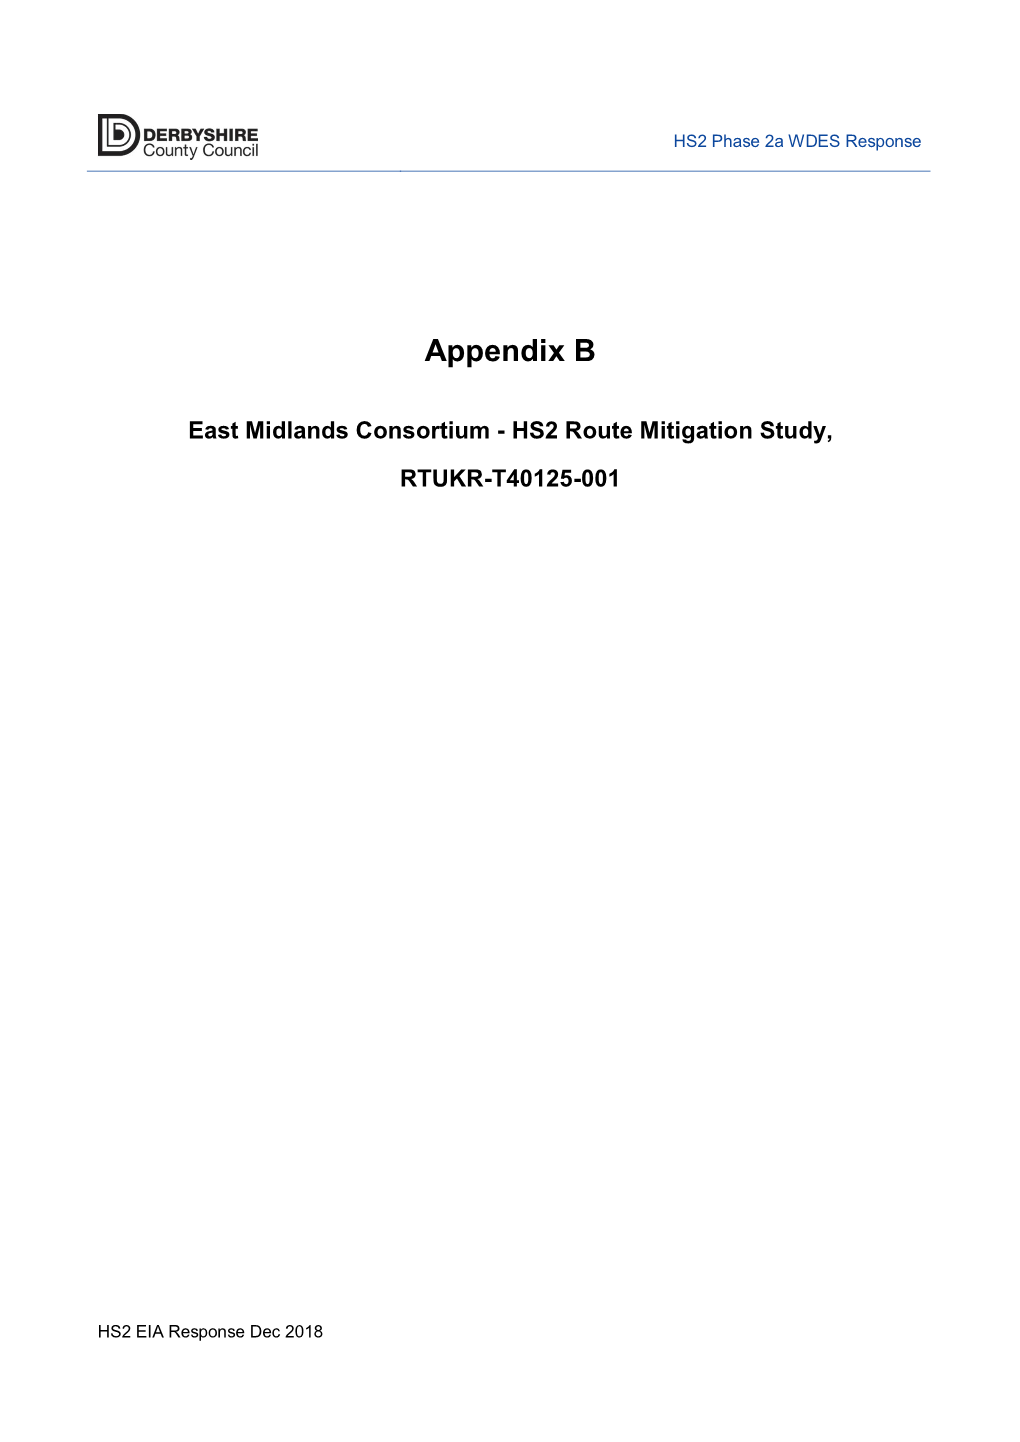 Appendix B East Midlands Consortium HS2 Route Mitigation Study